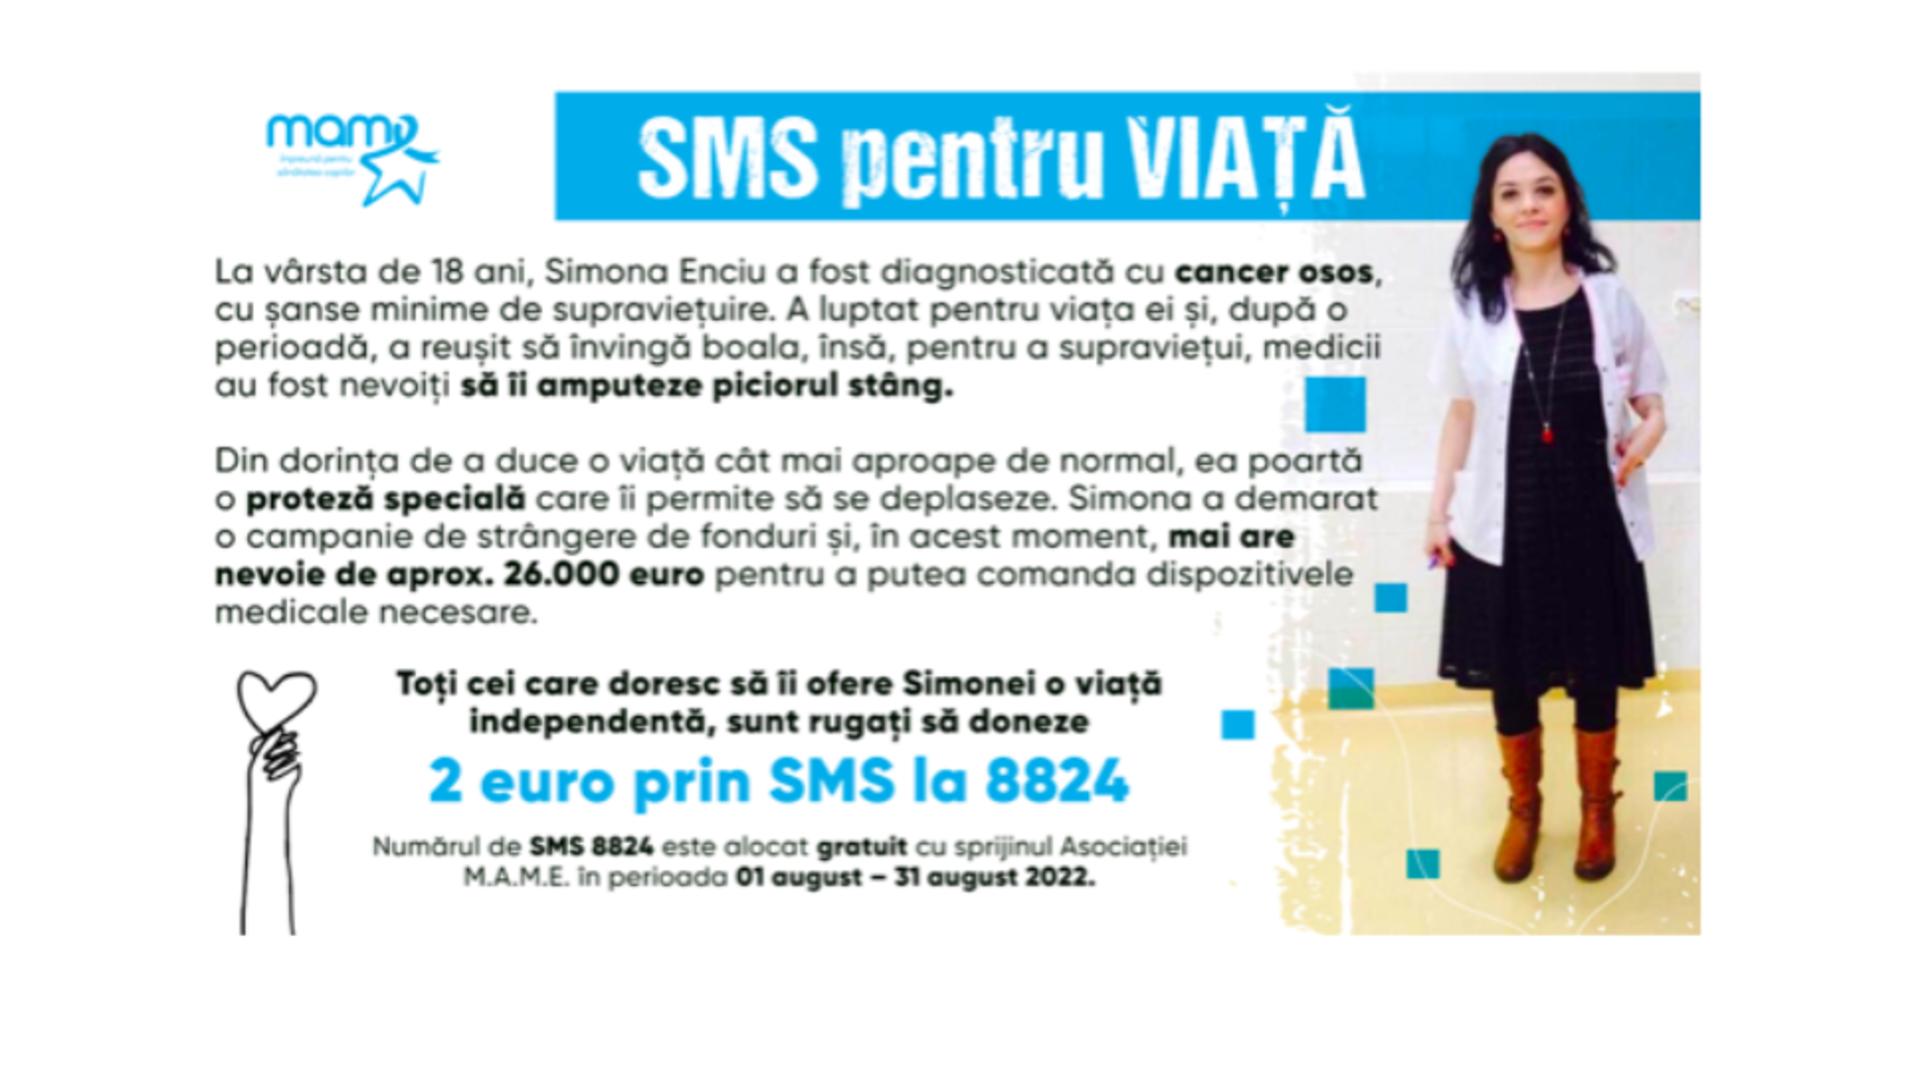 SMS pentru viață. Simona Enciu a supraviețuit cancerului, dar are nevoie de o proteză - Și tu poți face minuni donând 2 euro!